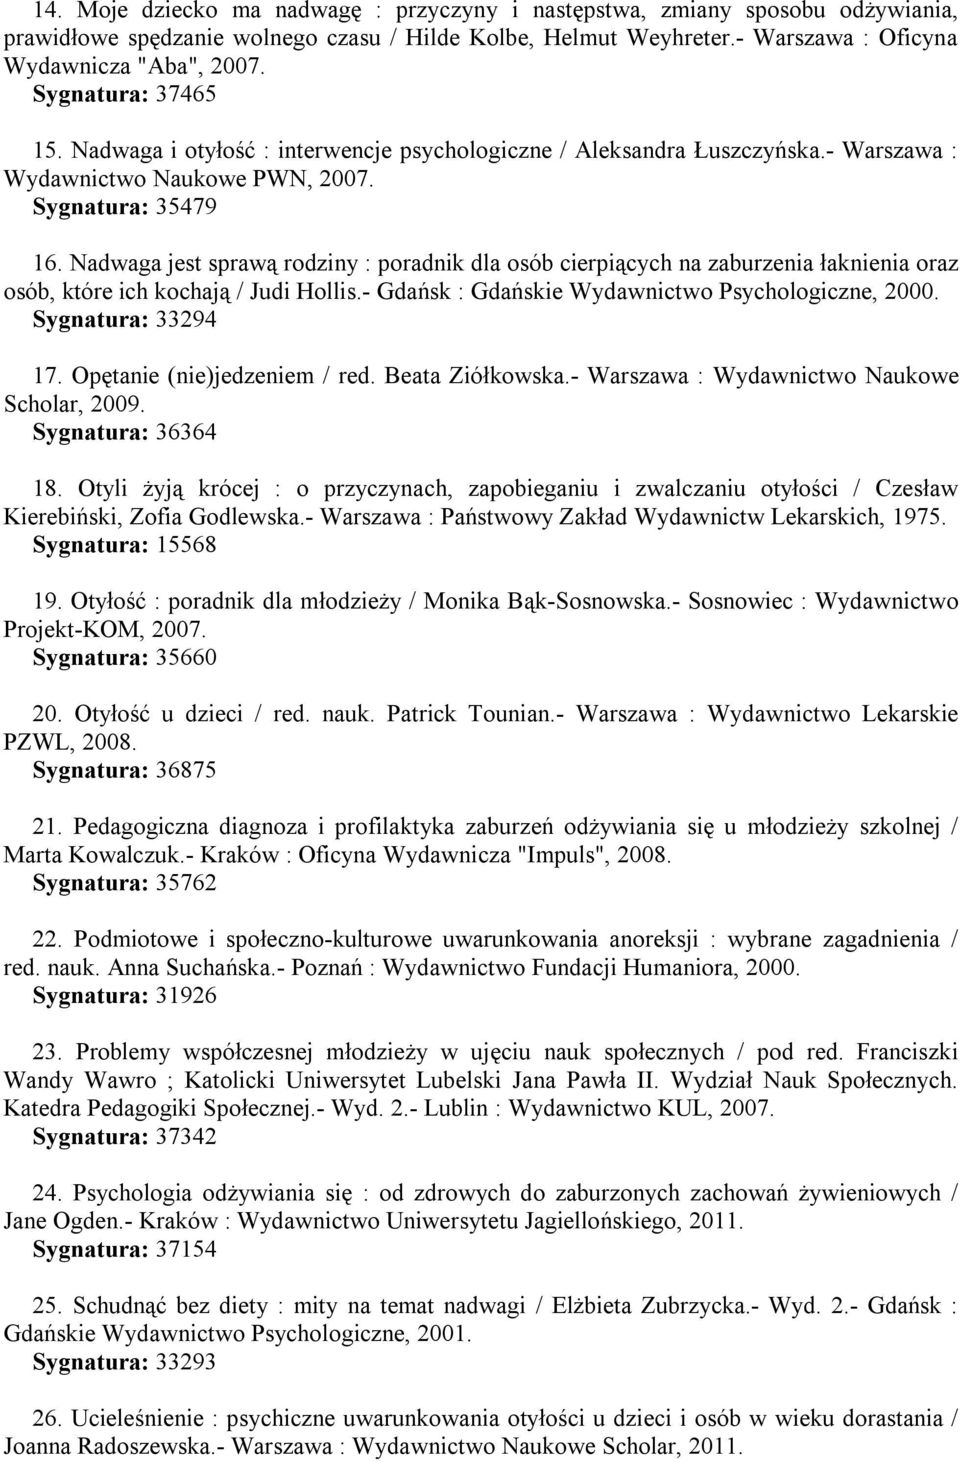 Nadwaga jest sprawą rodziny : poradnik dla osób cierpiących na zaburzenia łaknienia oraz osób, które ich kochają / Judi Hollis.- Gdańsk : Gdańskie Wydawnictwo Psychologiczne, 2000.